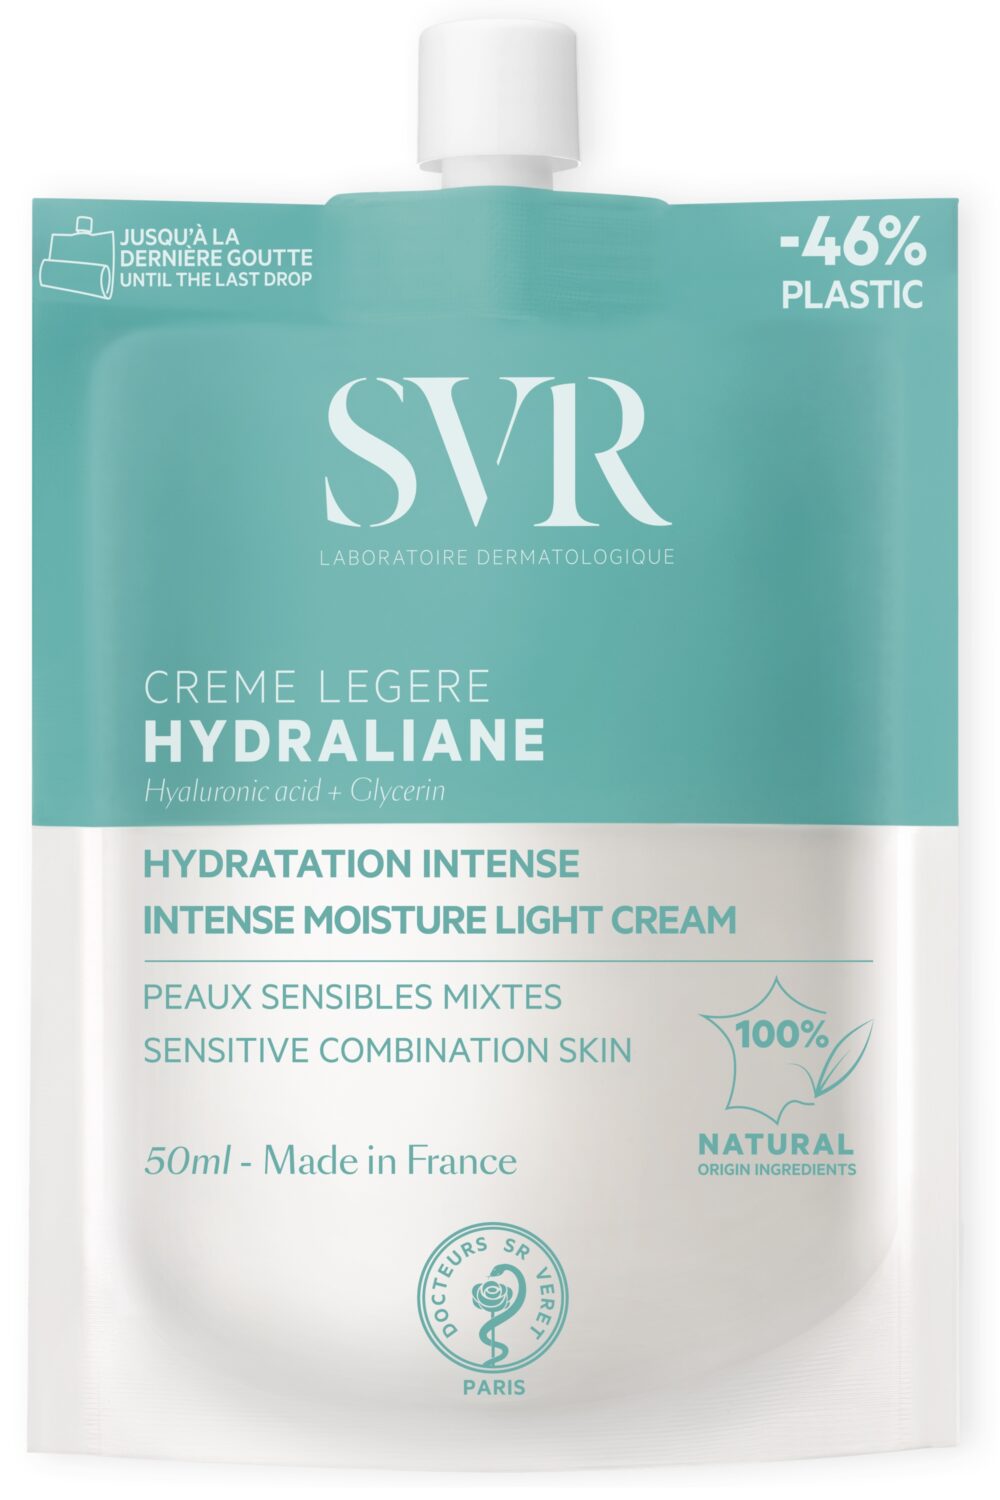 SVR - Crème légère hydratante Hydraline